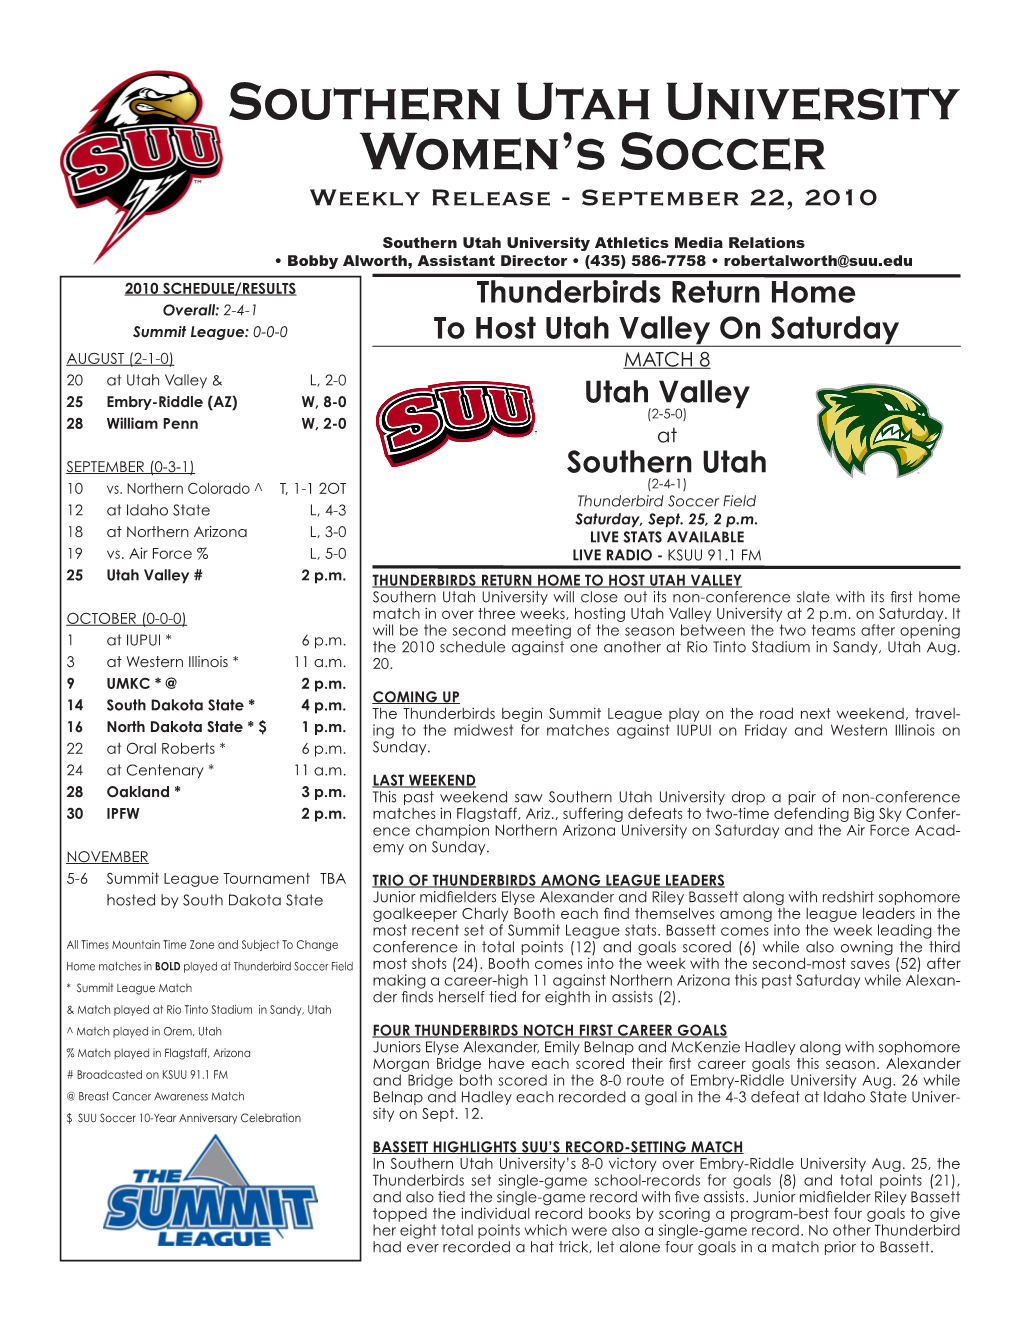 Southern Utah University Women's Soccer